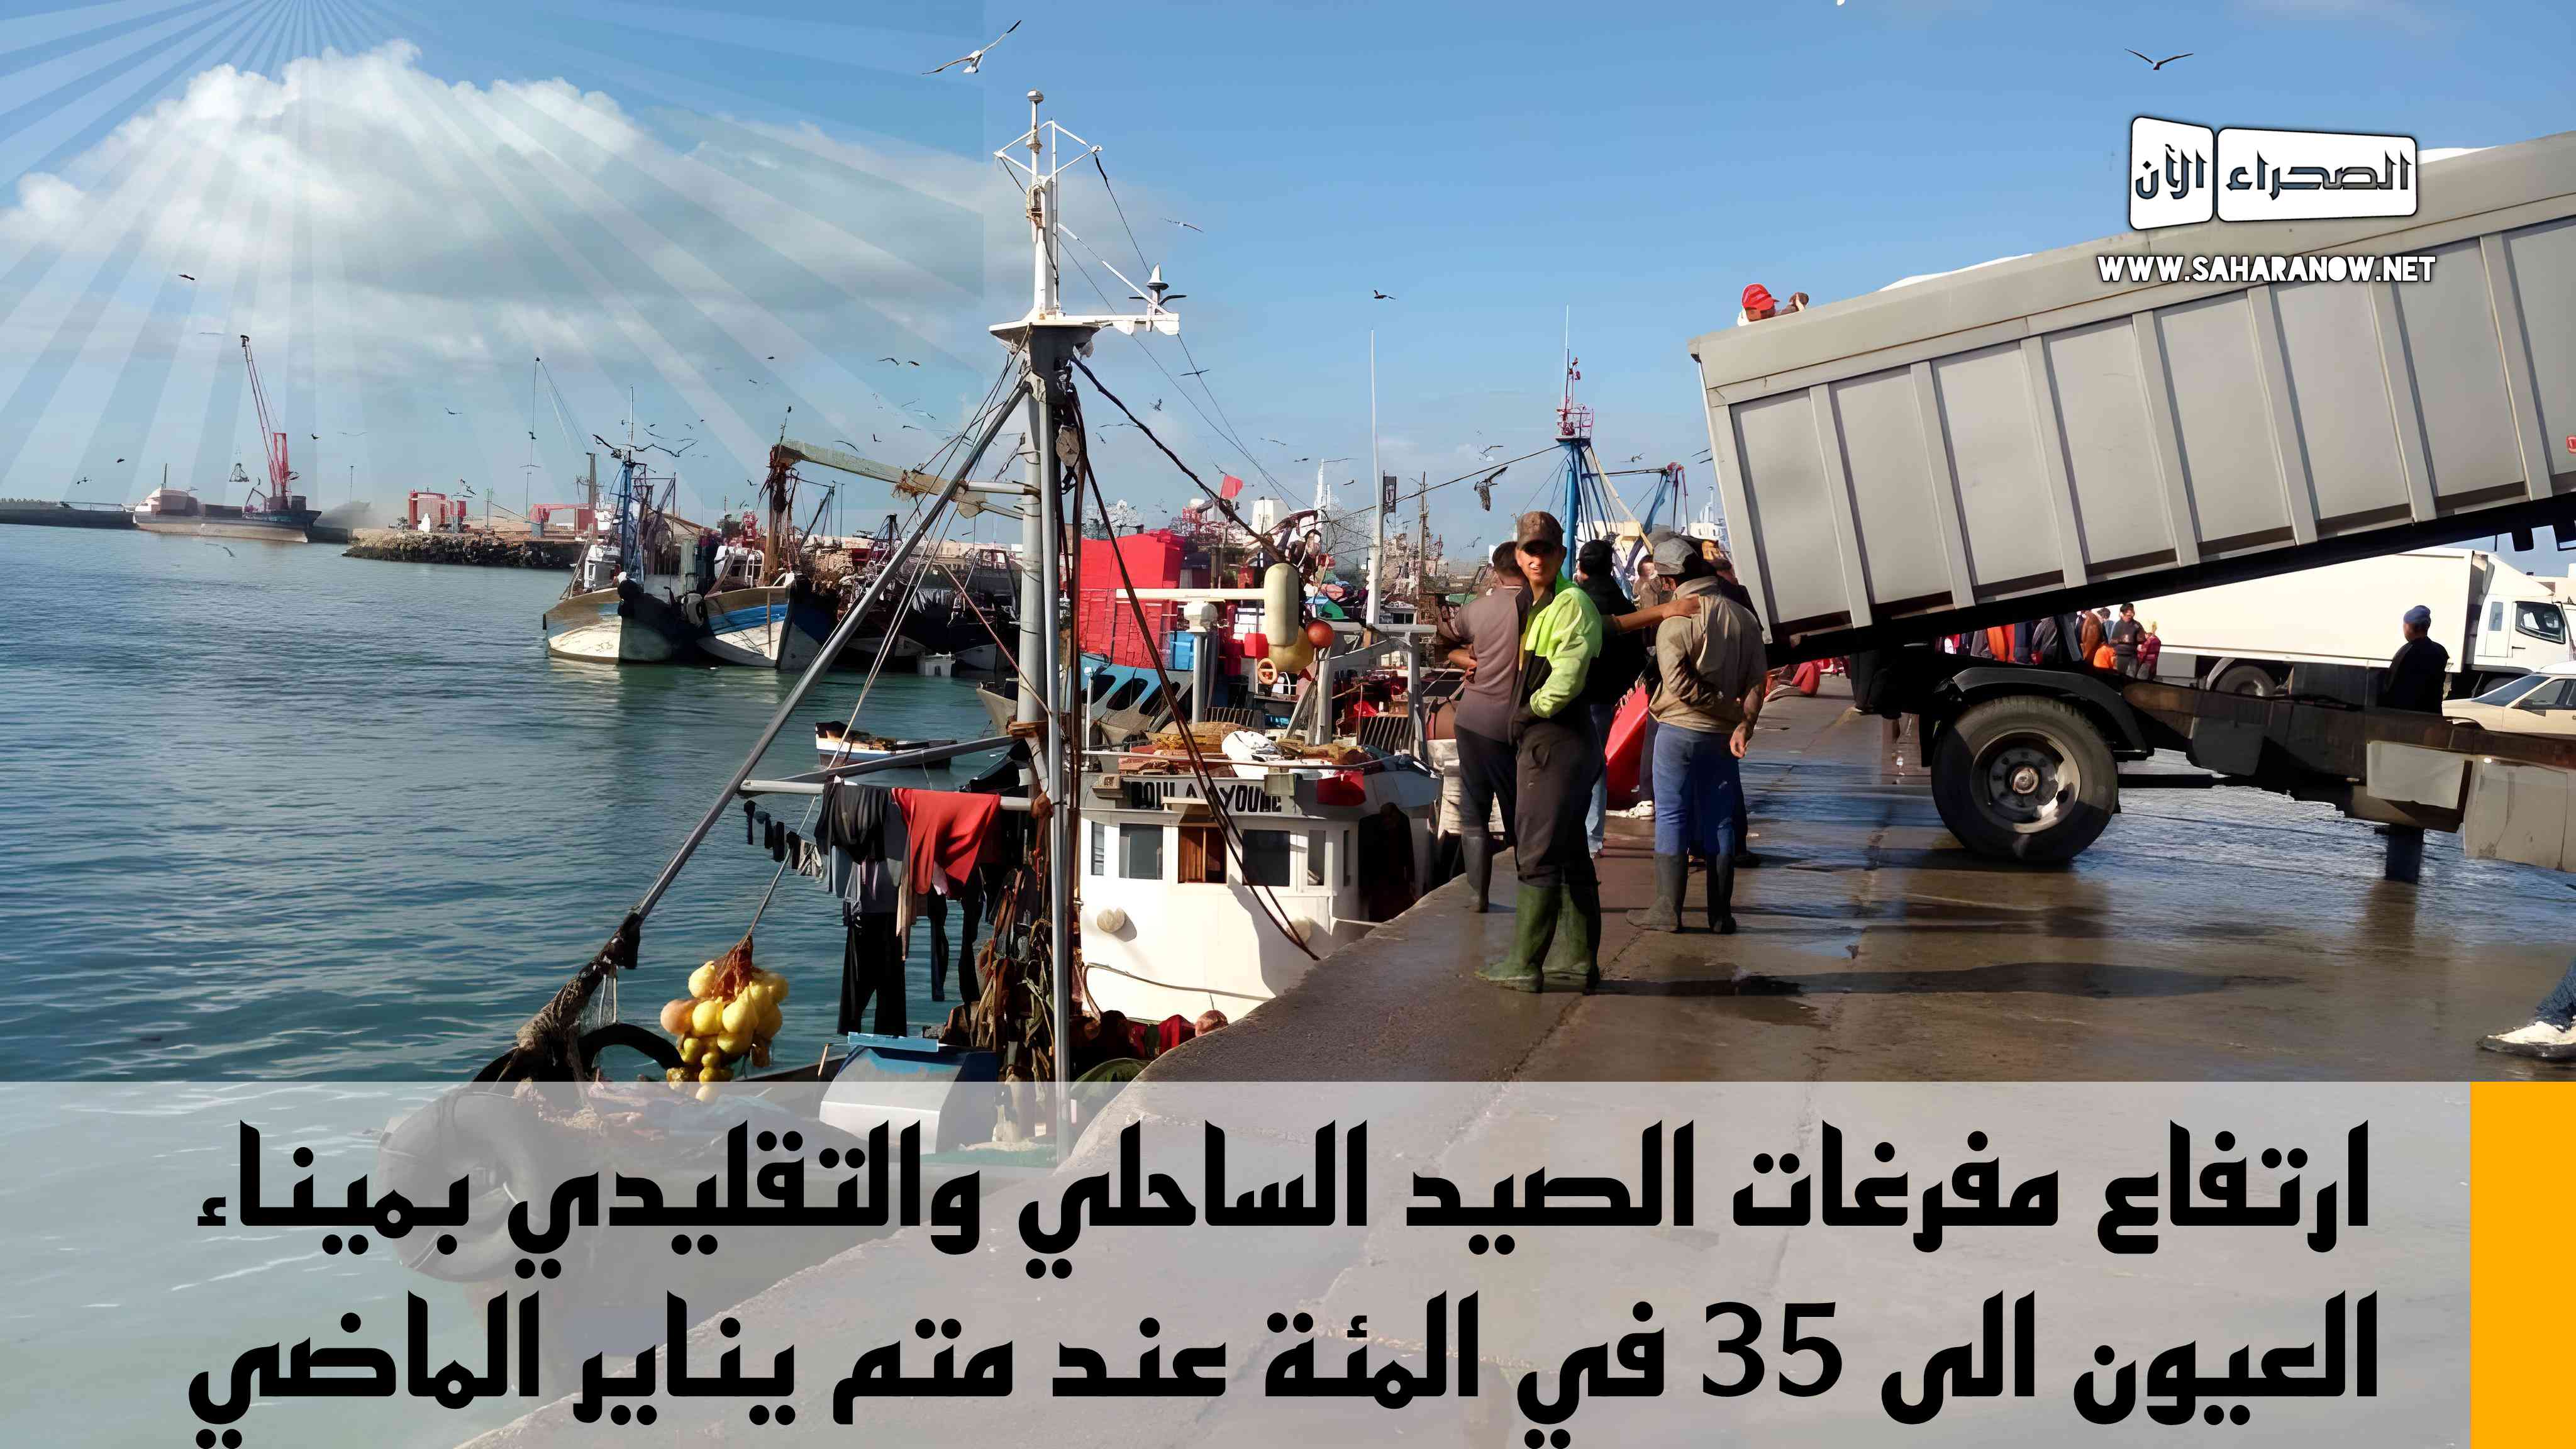 ارتفاع مفرغات الصيد الساحلي والتقليدي بميناء العيون الى 35 في المئة عند متم يناير الماضي